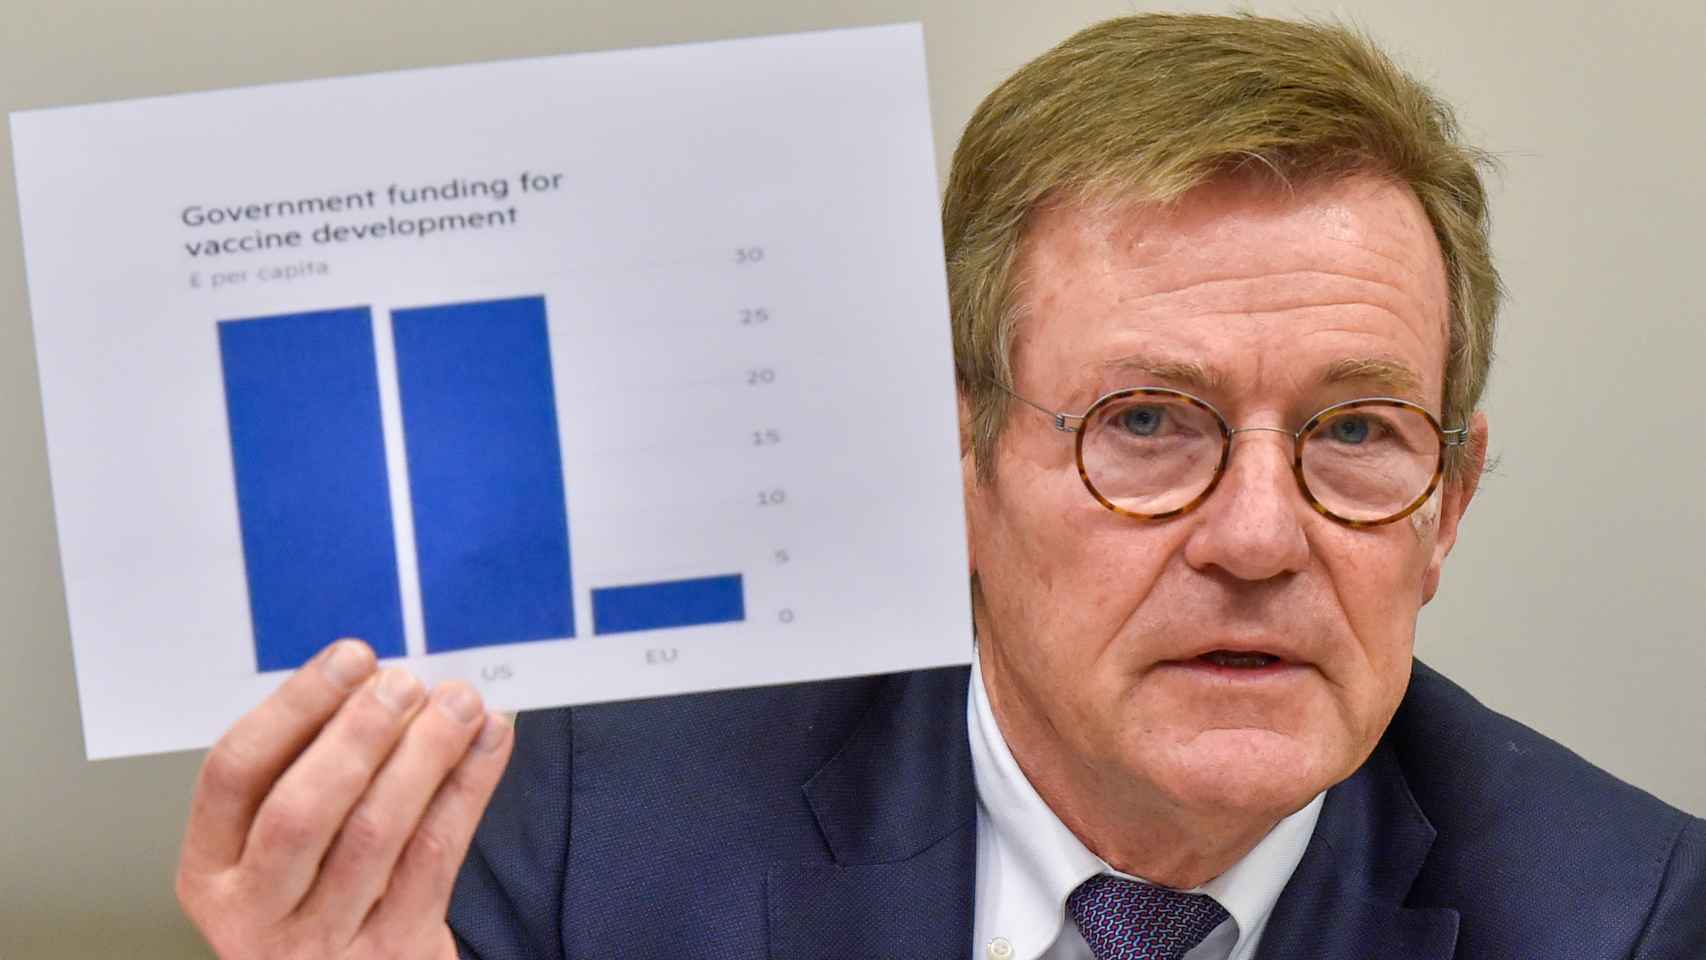 El presidente del comité de Presupuestos, Johan Van Overtveldt, ha criticado este lunes la escasa inversión de la UE en vacunas